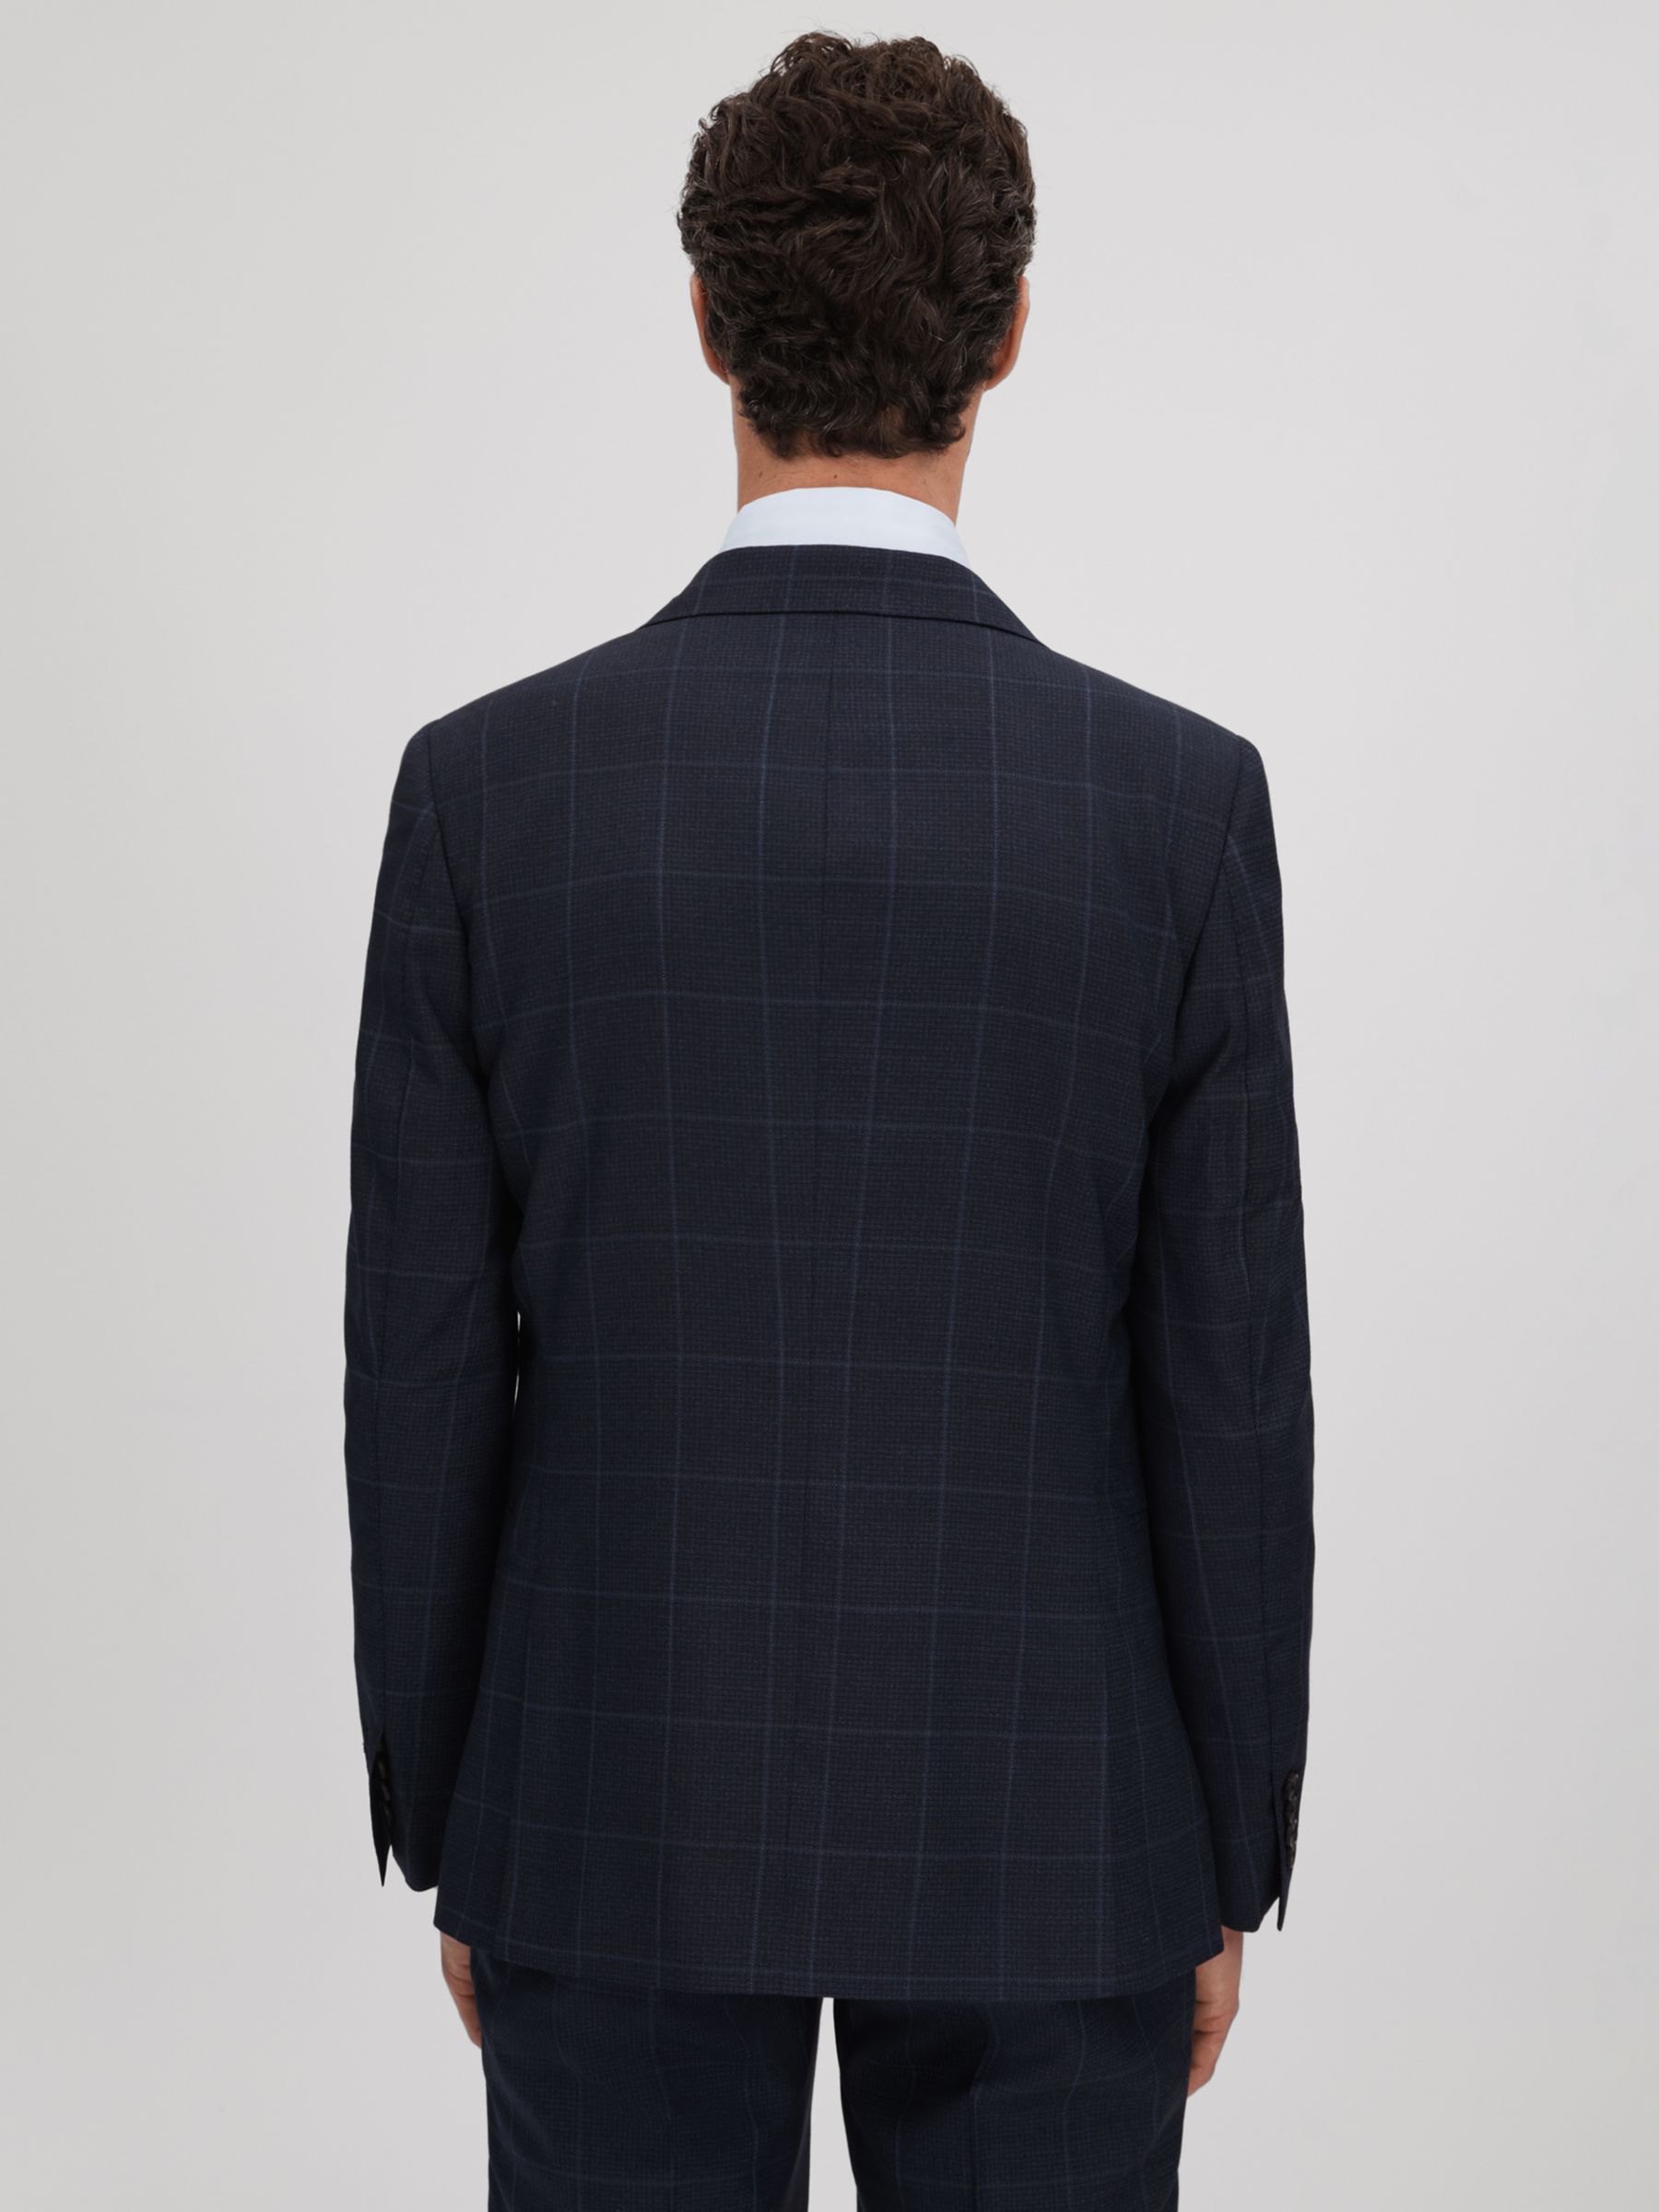 Buy Reiss Klink Check Wool Suit Jacket, Blue Online at johnlewis.com